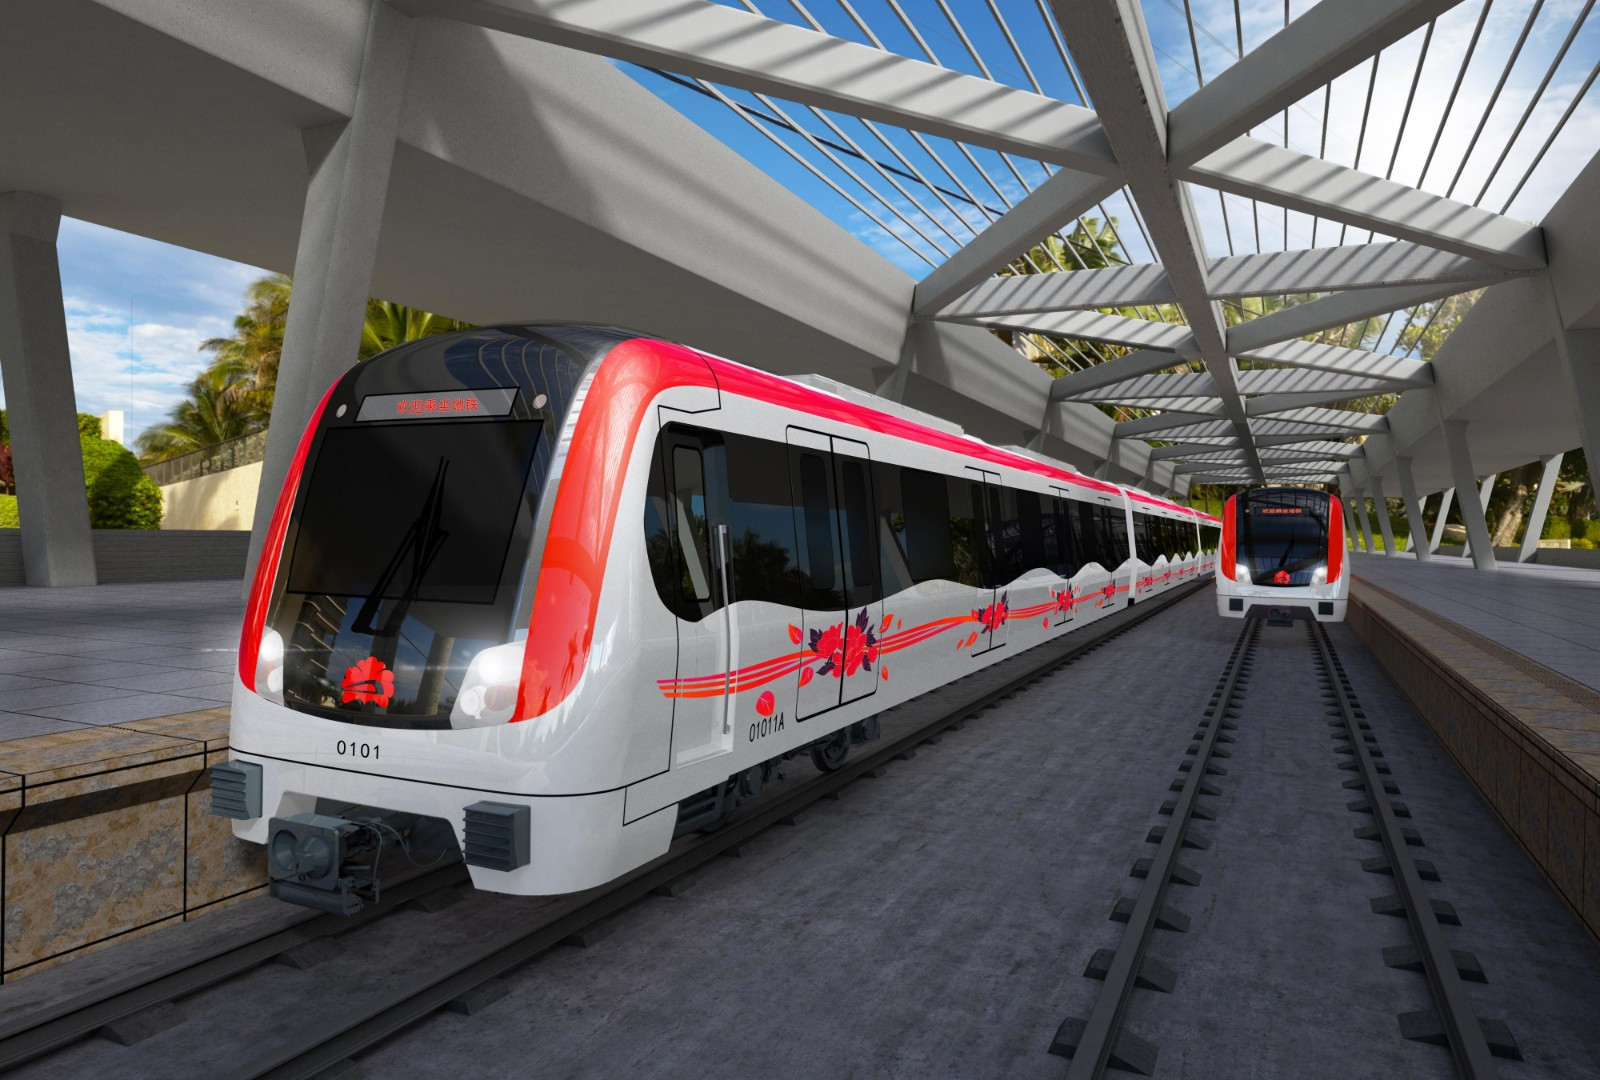 看看洛阳地铁站长啥样 地铁1号线车站及车辆初步概念设计方案公示